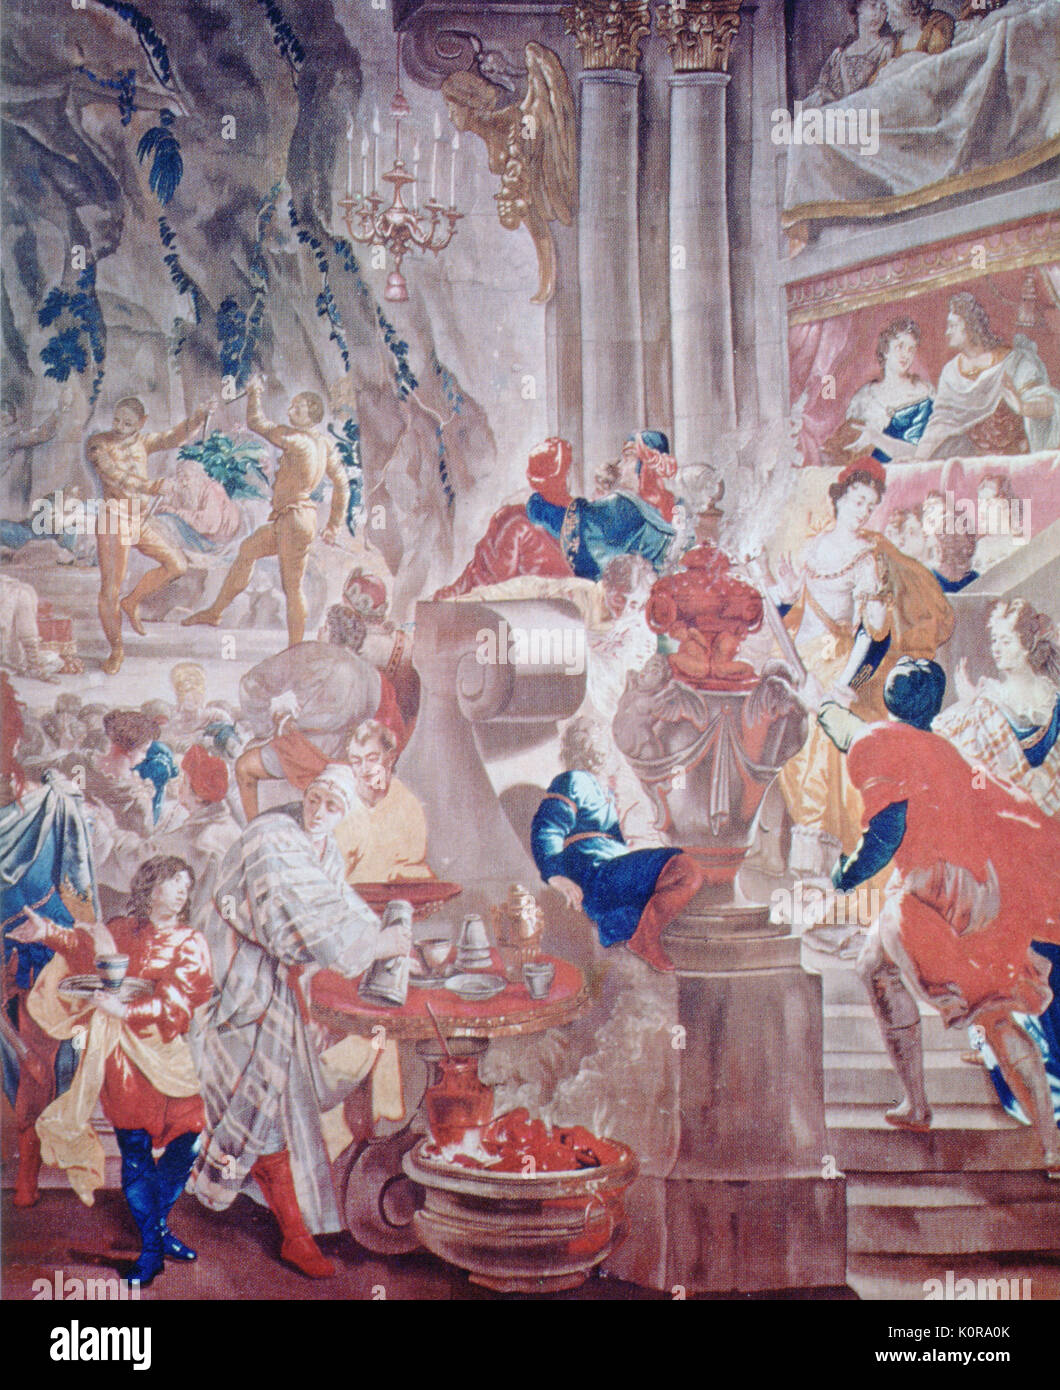 LOUIS XIV a prestazioni di LULLY opera, ARMIDE presso l'Opera di Parigi. Dettaglio della tappezzeria da Van der Borgh c.1690 J B LULLY, compositore italo-francese, 1632-1687 Foto Stock